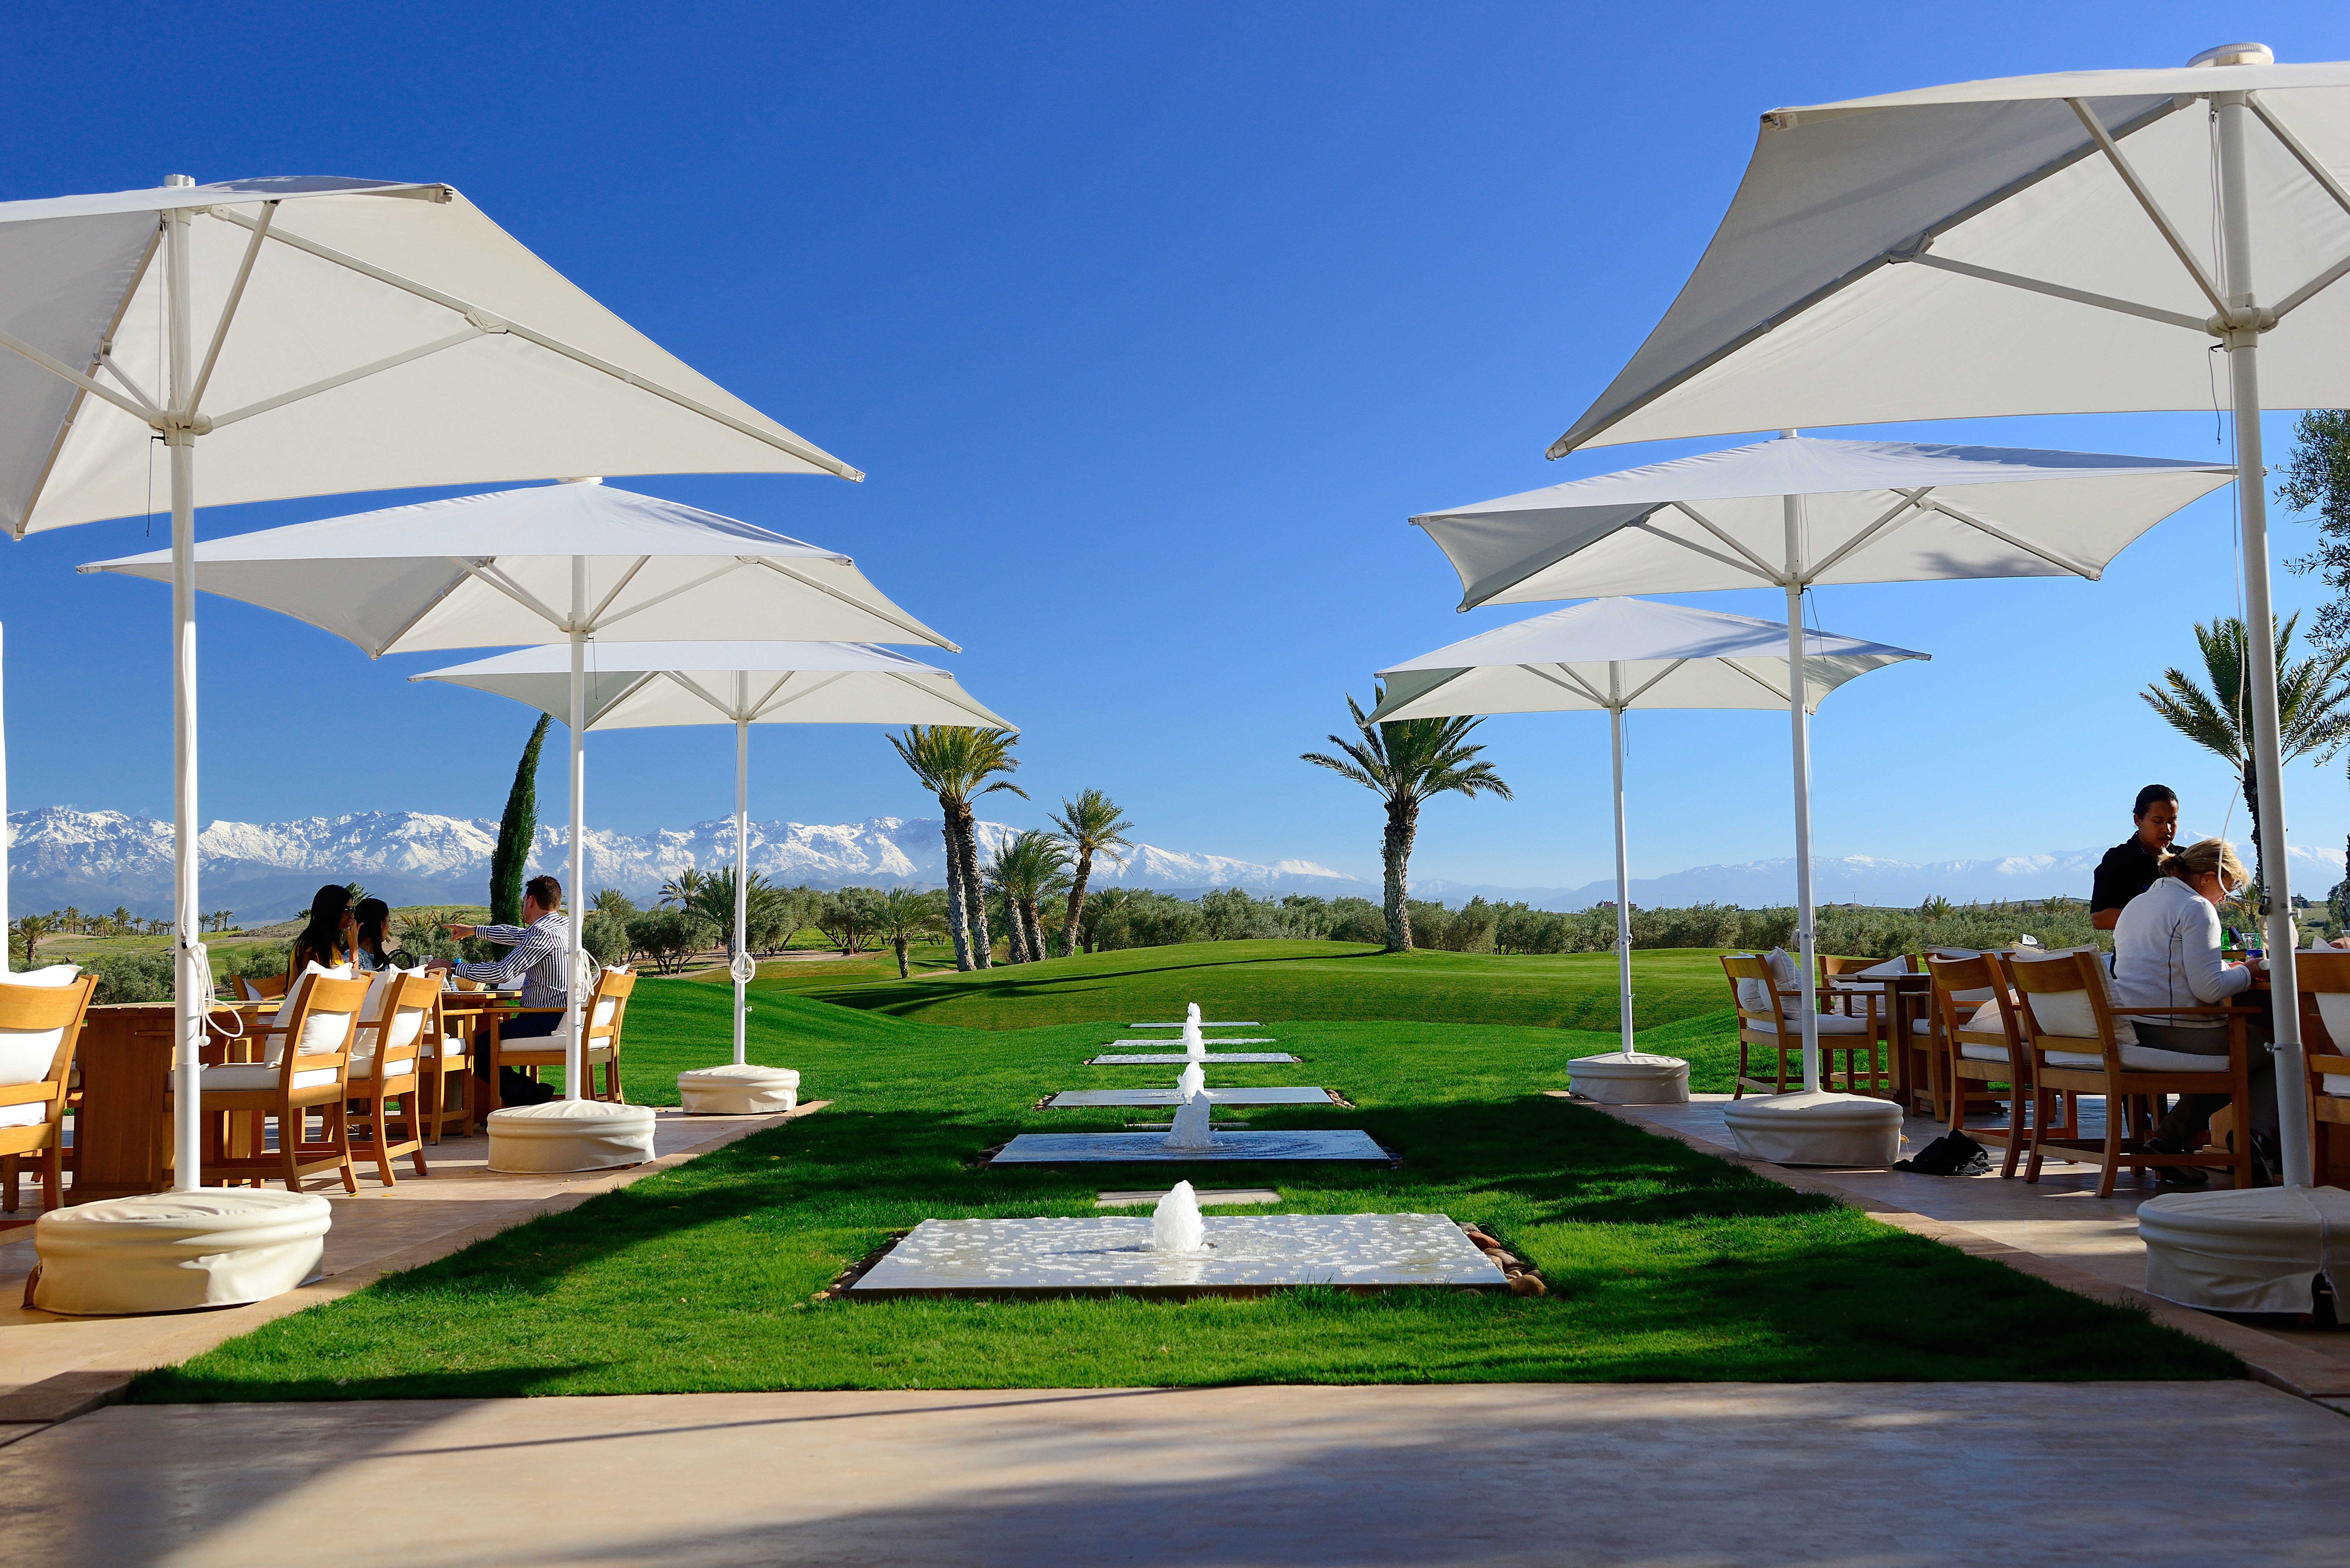 Assoufid's terrace offers a stunning spot to soak up the views 